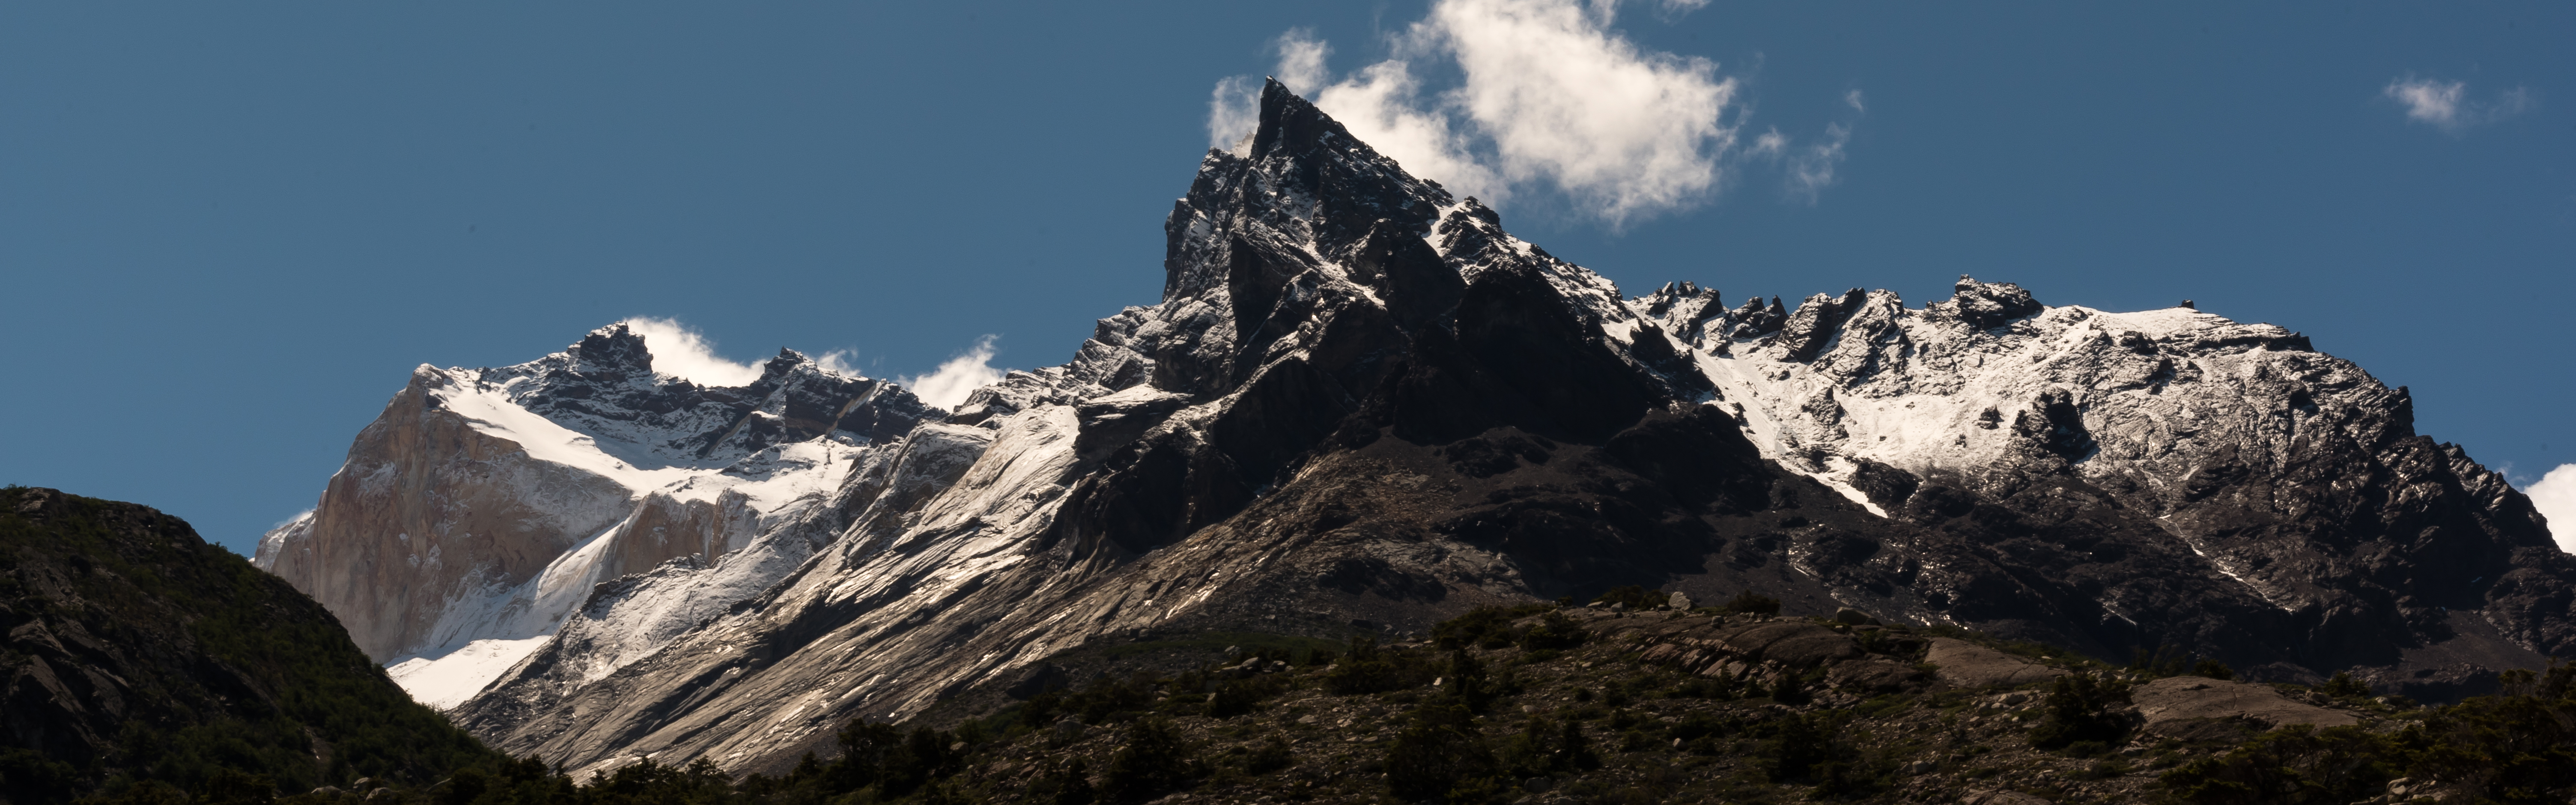 Torres Del Paine W Trek Chile